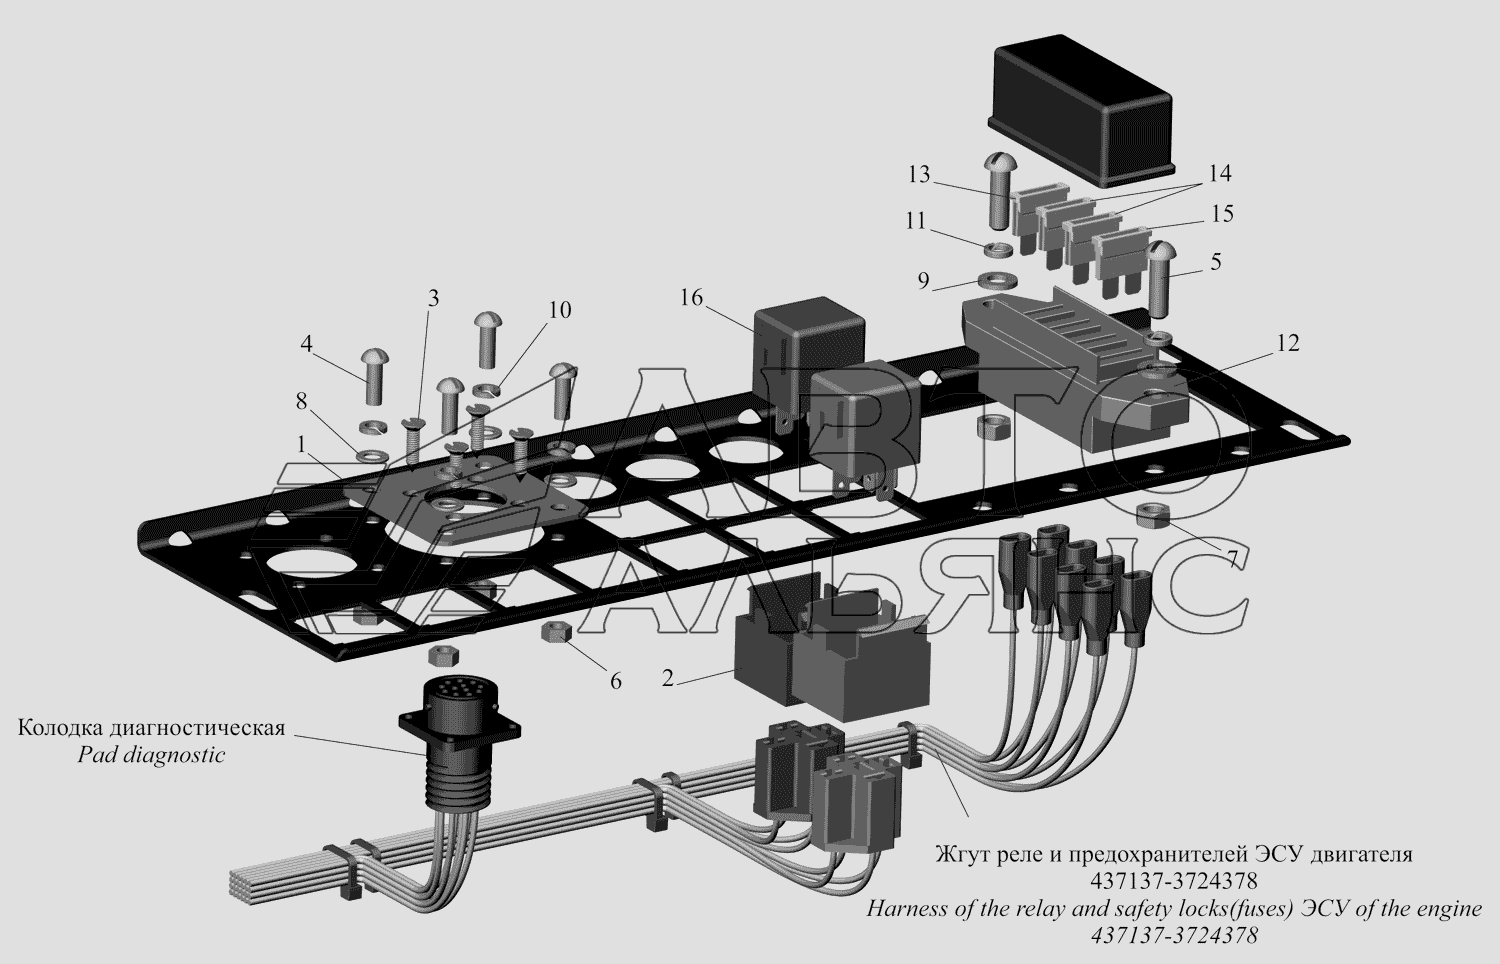 Панель реле и предохранителей ЭСУ двигателя МАЗ-437130 (Зубренок)